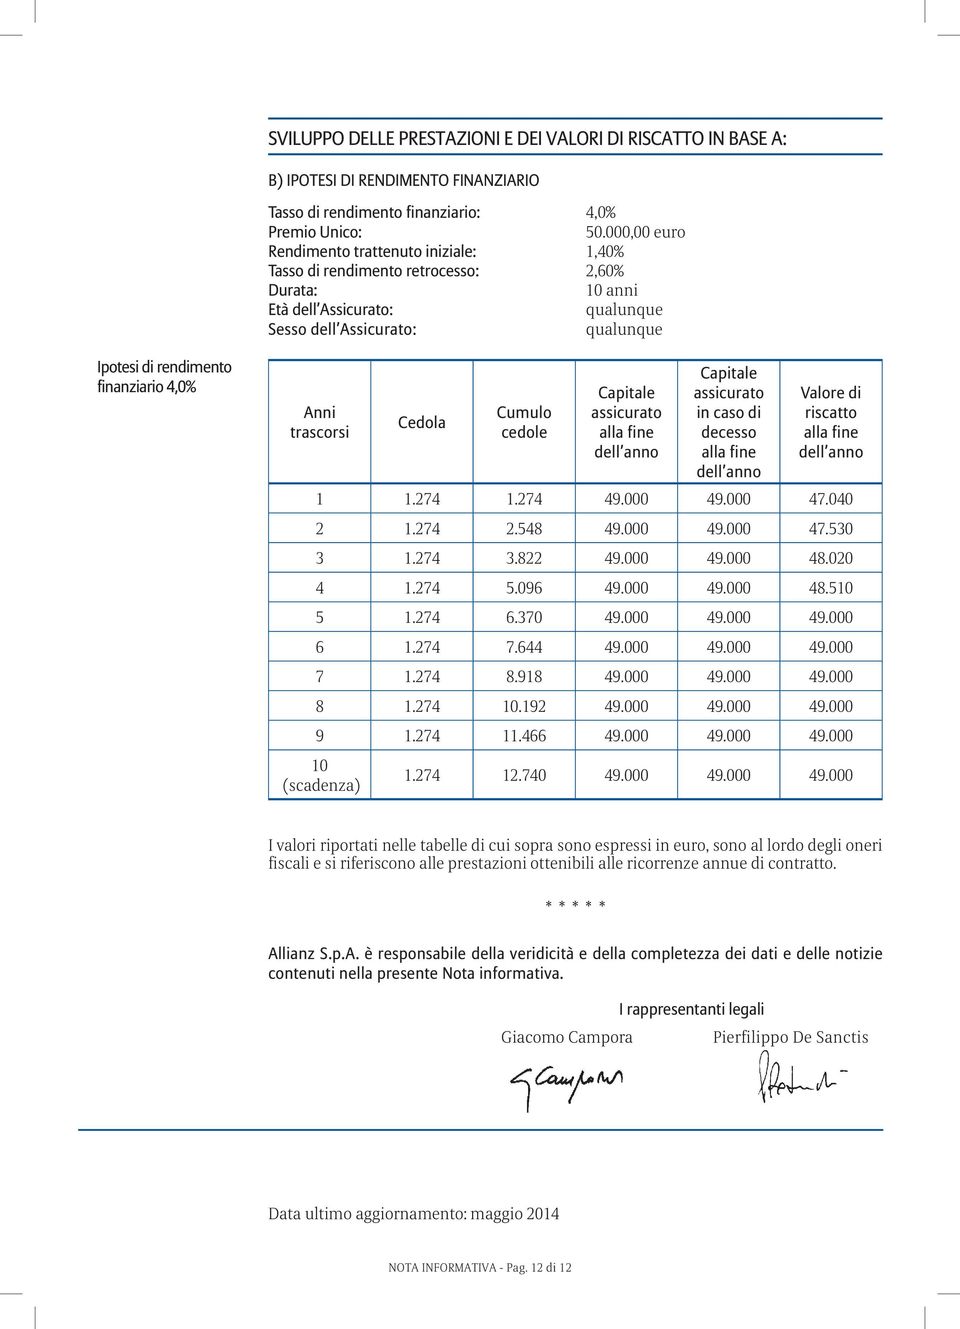 finanziario 4,0% Anni trascorsi Cedola Cumulo cedole Capitale assicurato alla fine dell anno Capitale assicurato in caso di decesso alla fine dell anno Valore di riscatto alla fine dell anno 1 1.